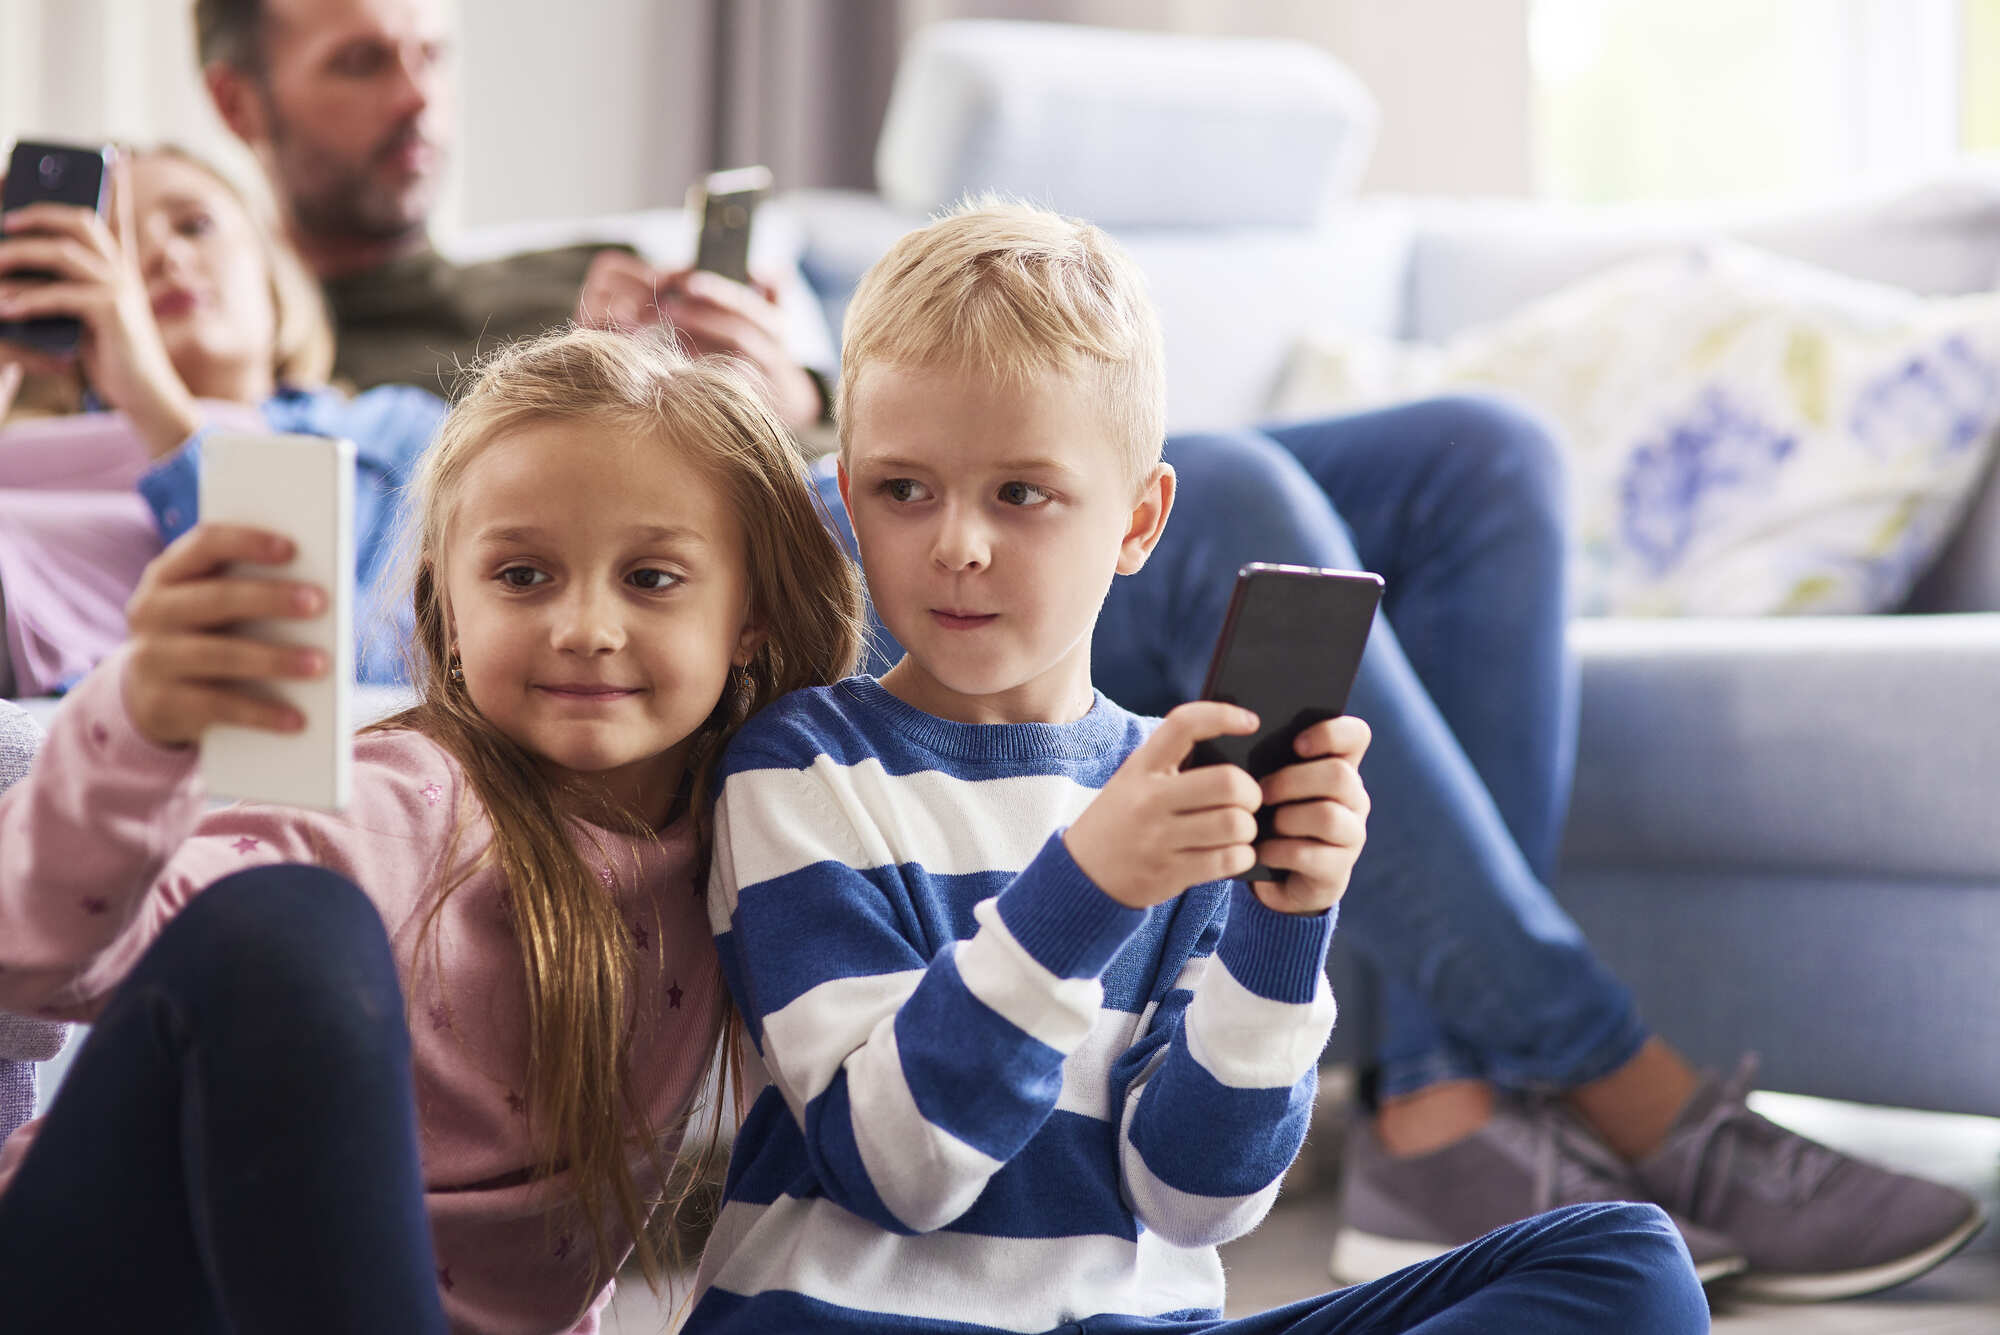 ¿Vas a comprar un smartphone para tu hijo? lee algunas recomendaciones antes.